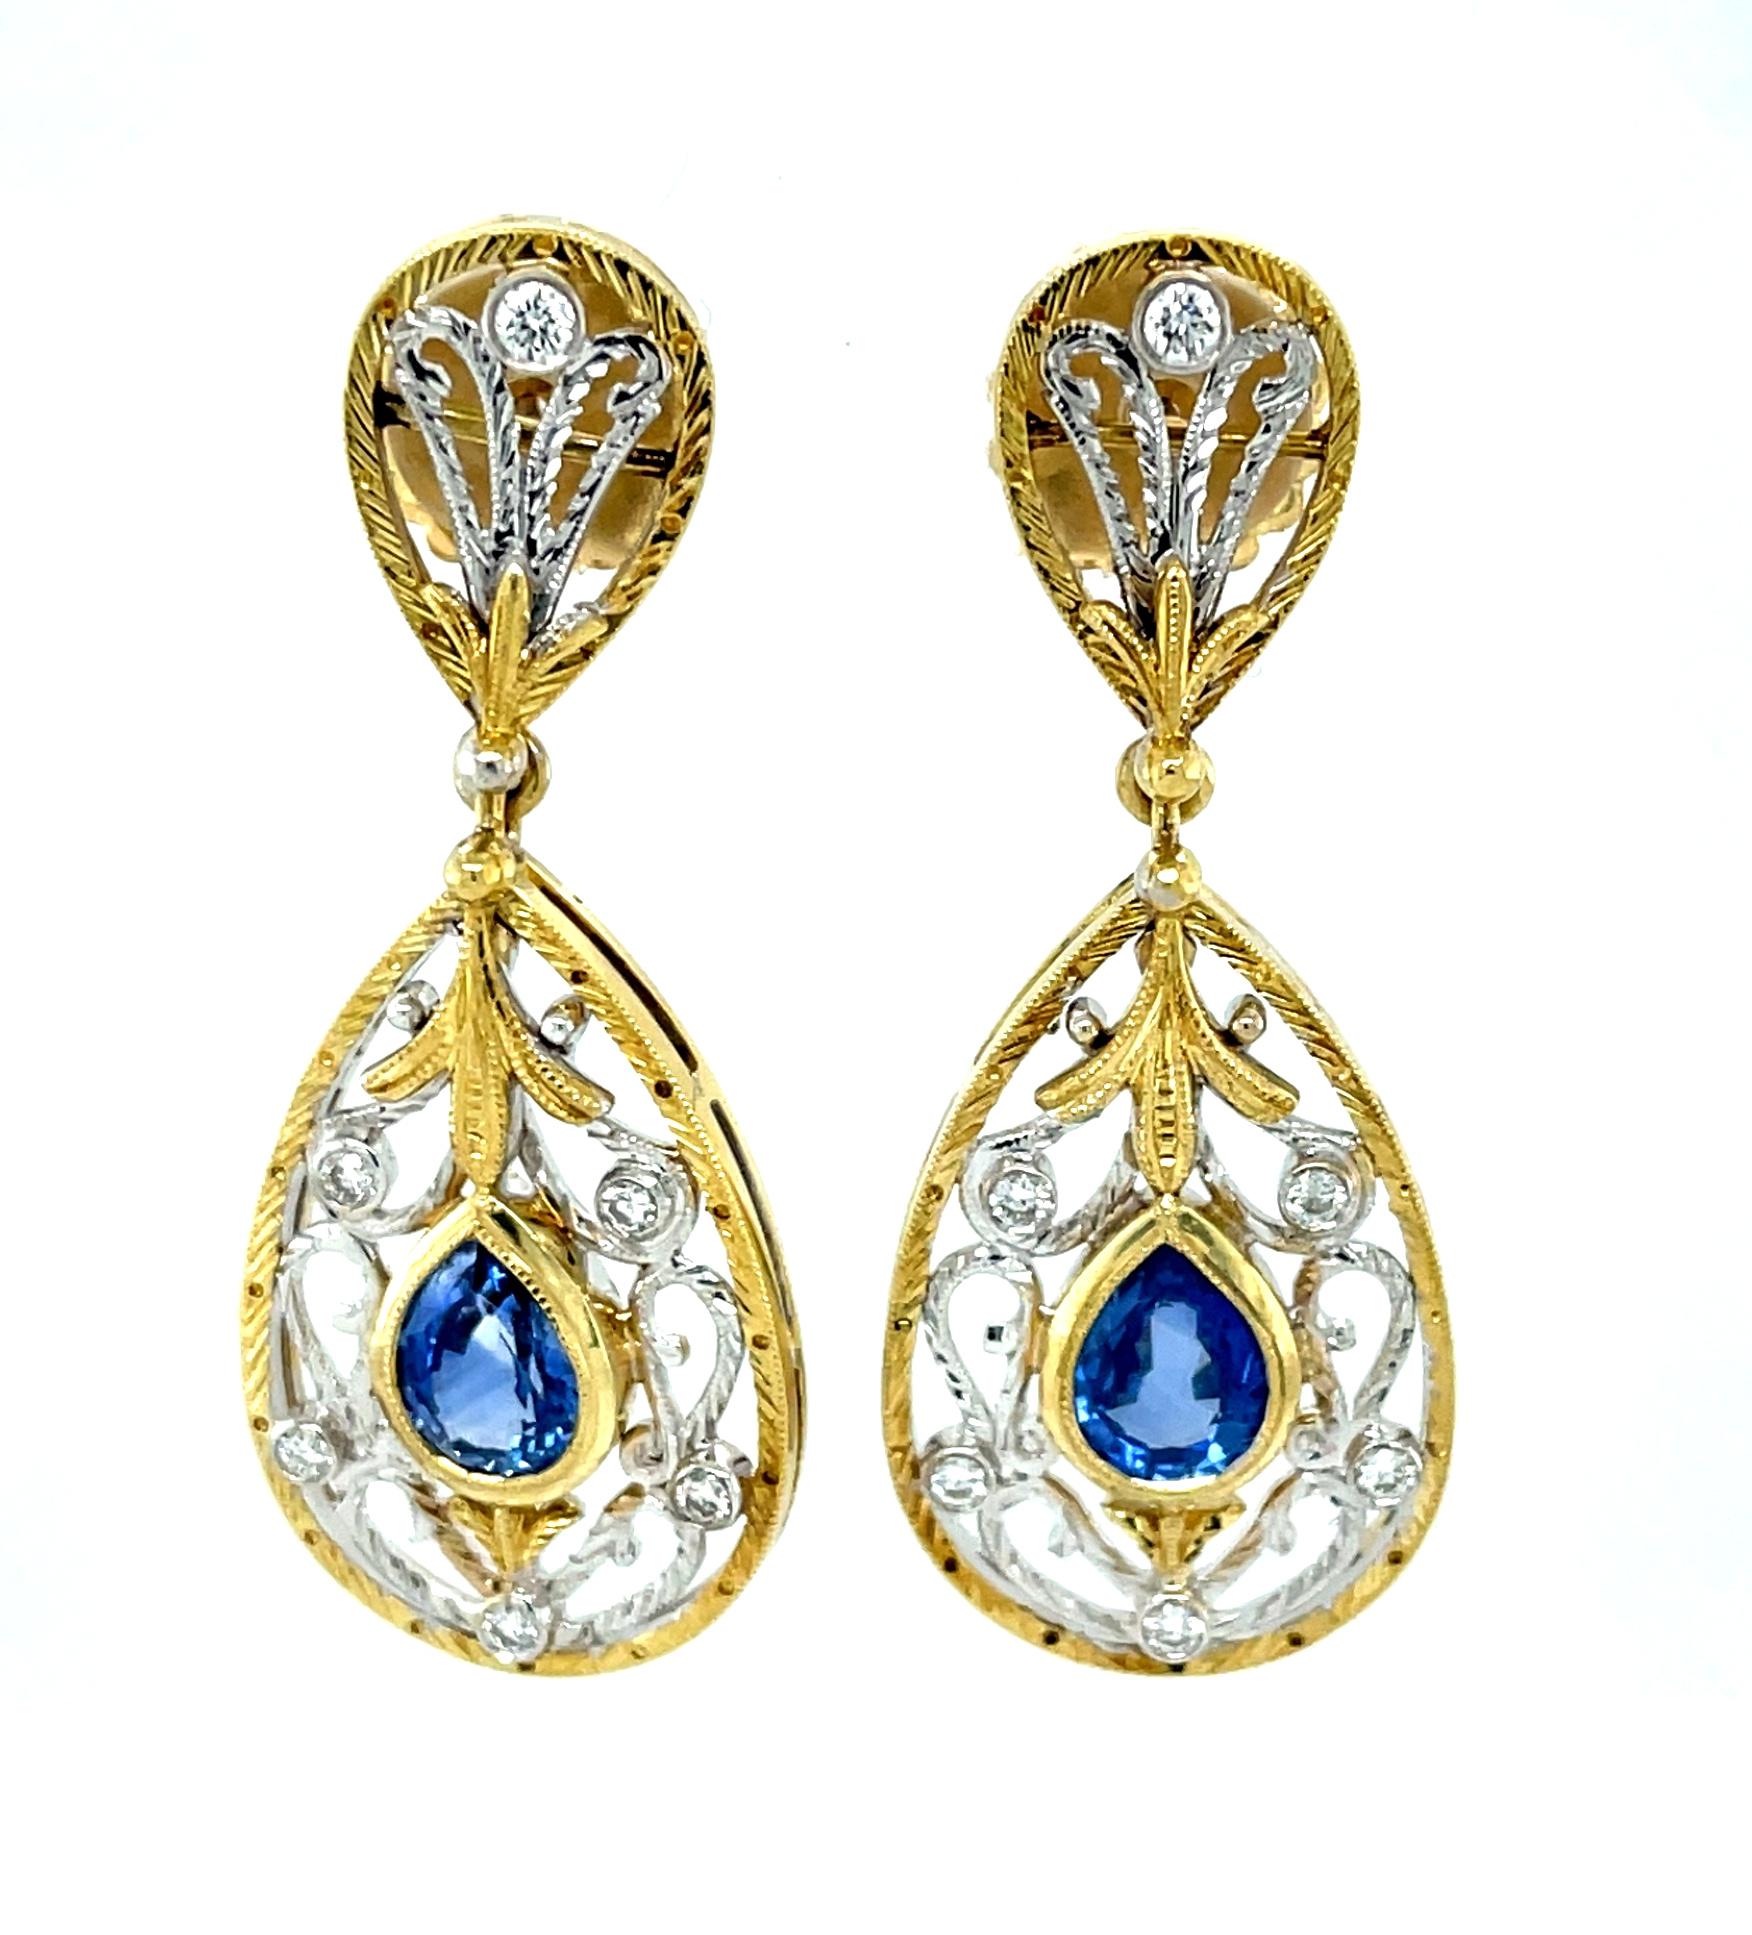 Ohrhänger mit blauen Saphiren und Diamanten, handgefertigt, filigran, 18 Karat Gold (Kunsthandwerker*in)